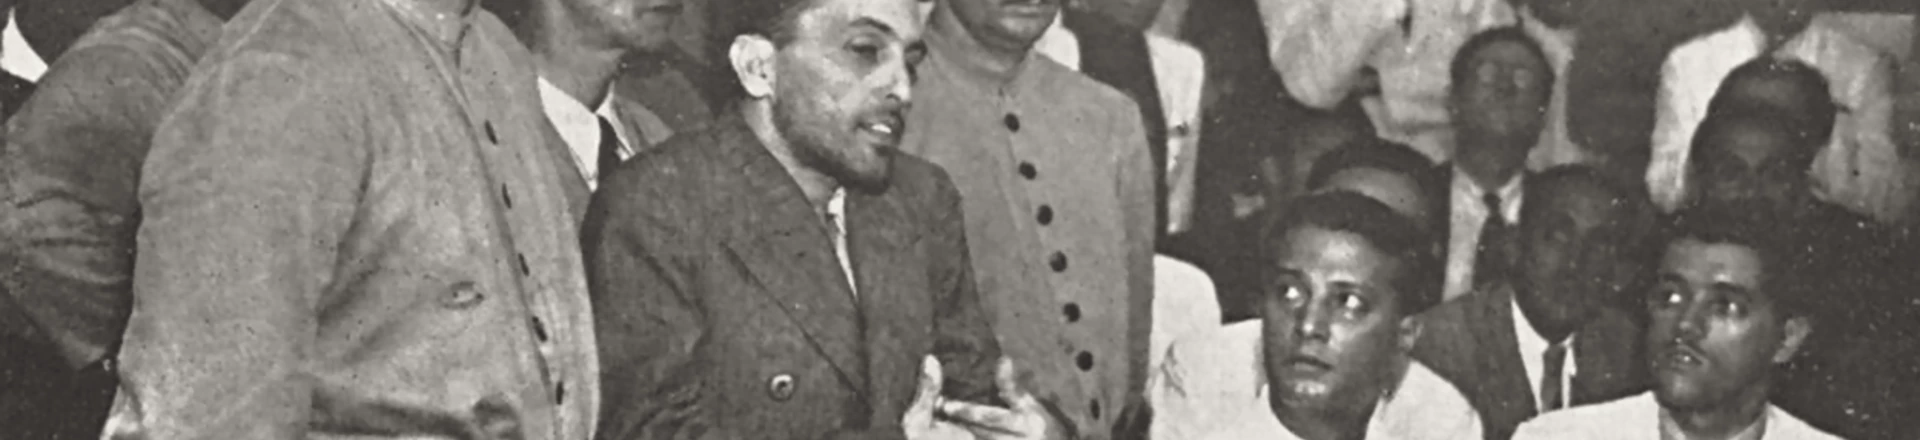 O líder comunista Luiz Carlos Prestes, ao centro, em julgamento pelo Tribunal de Segurança, 1937.